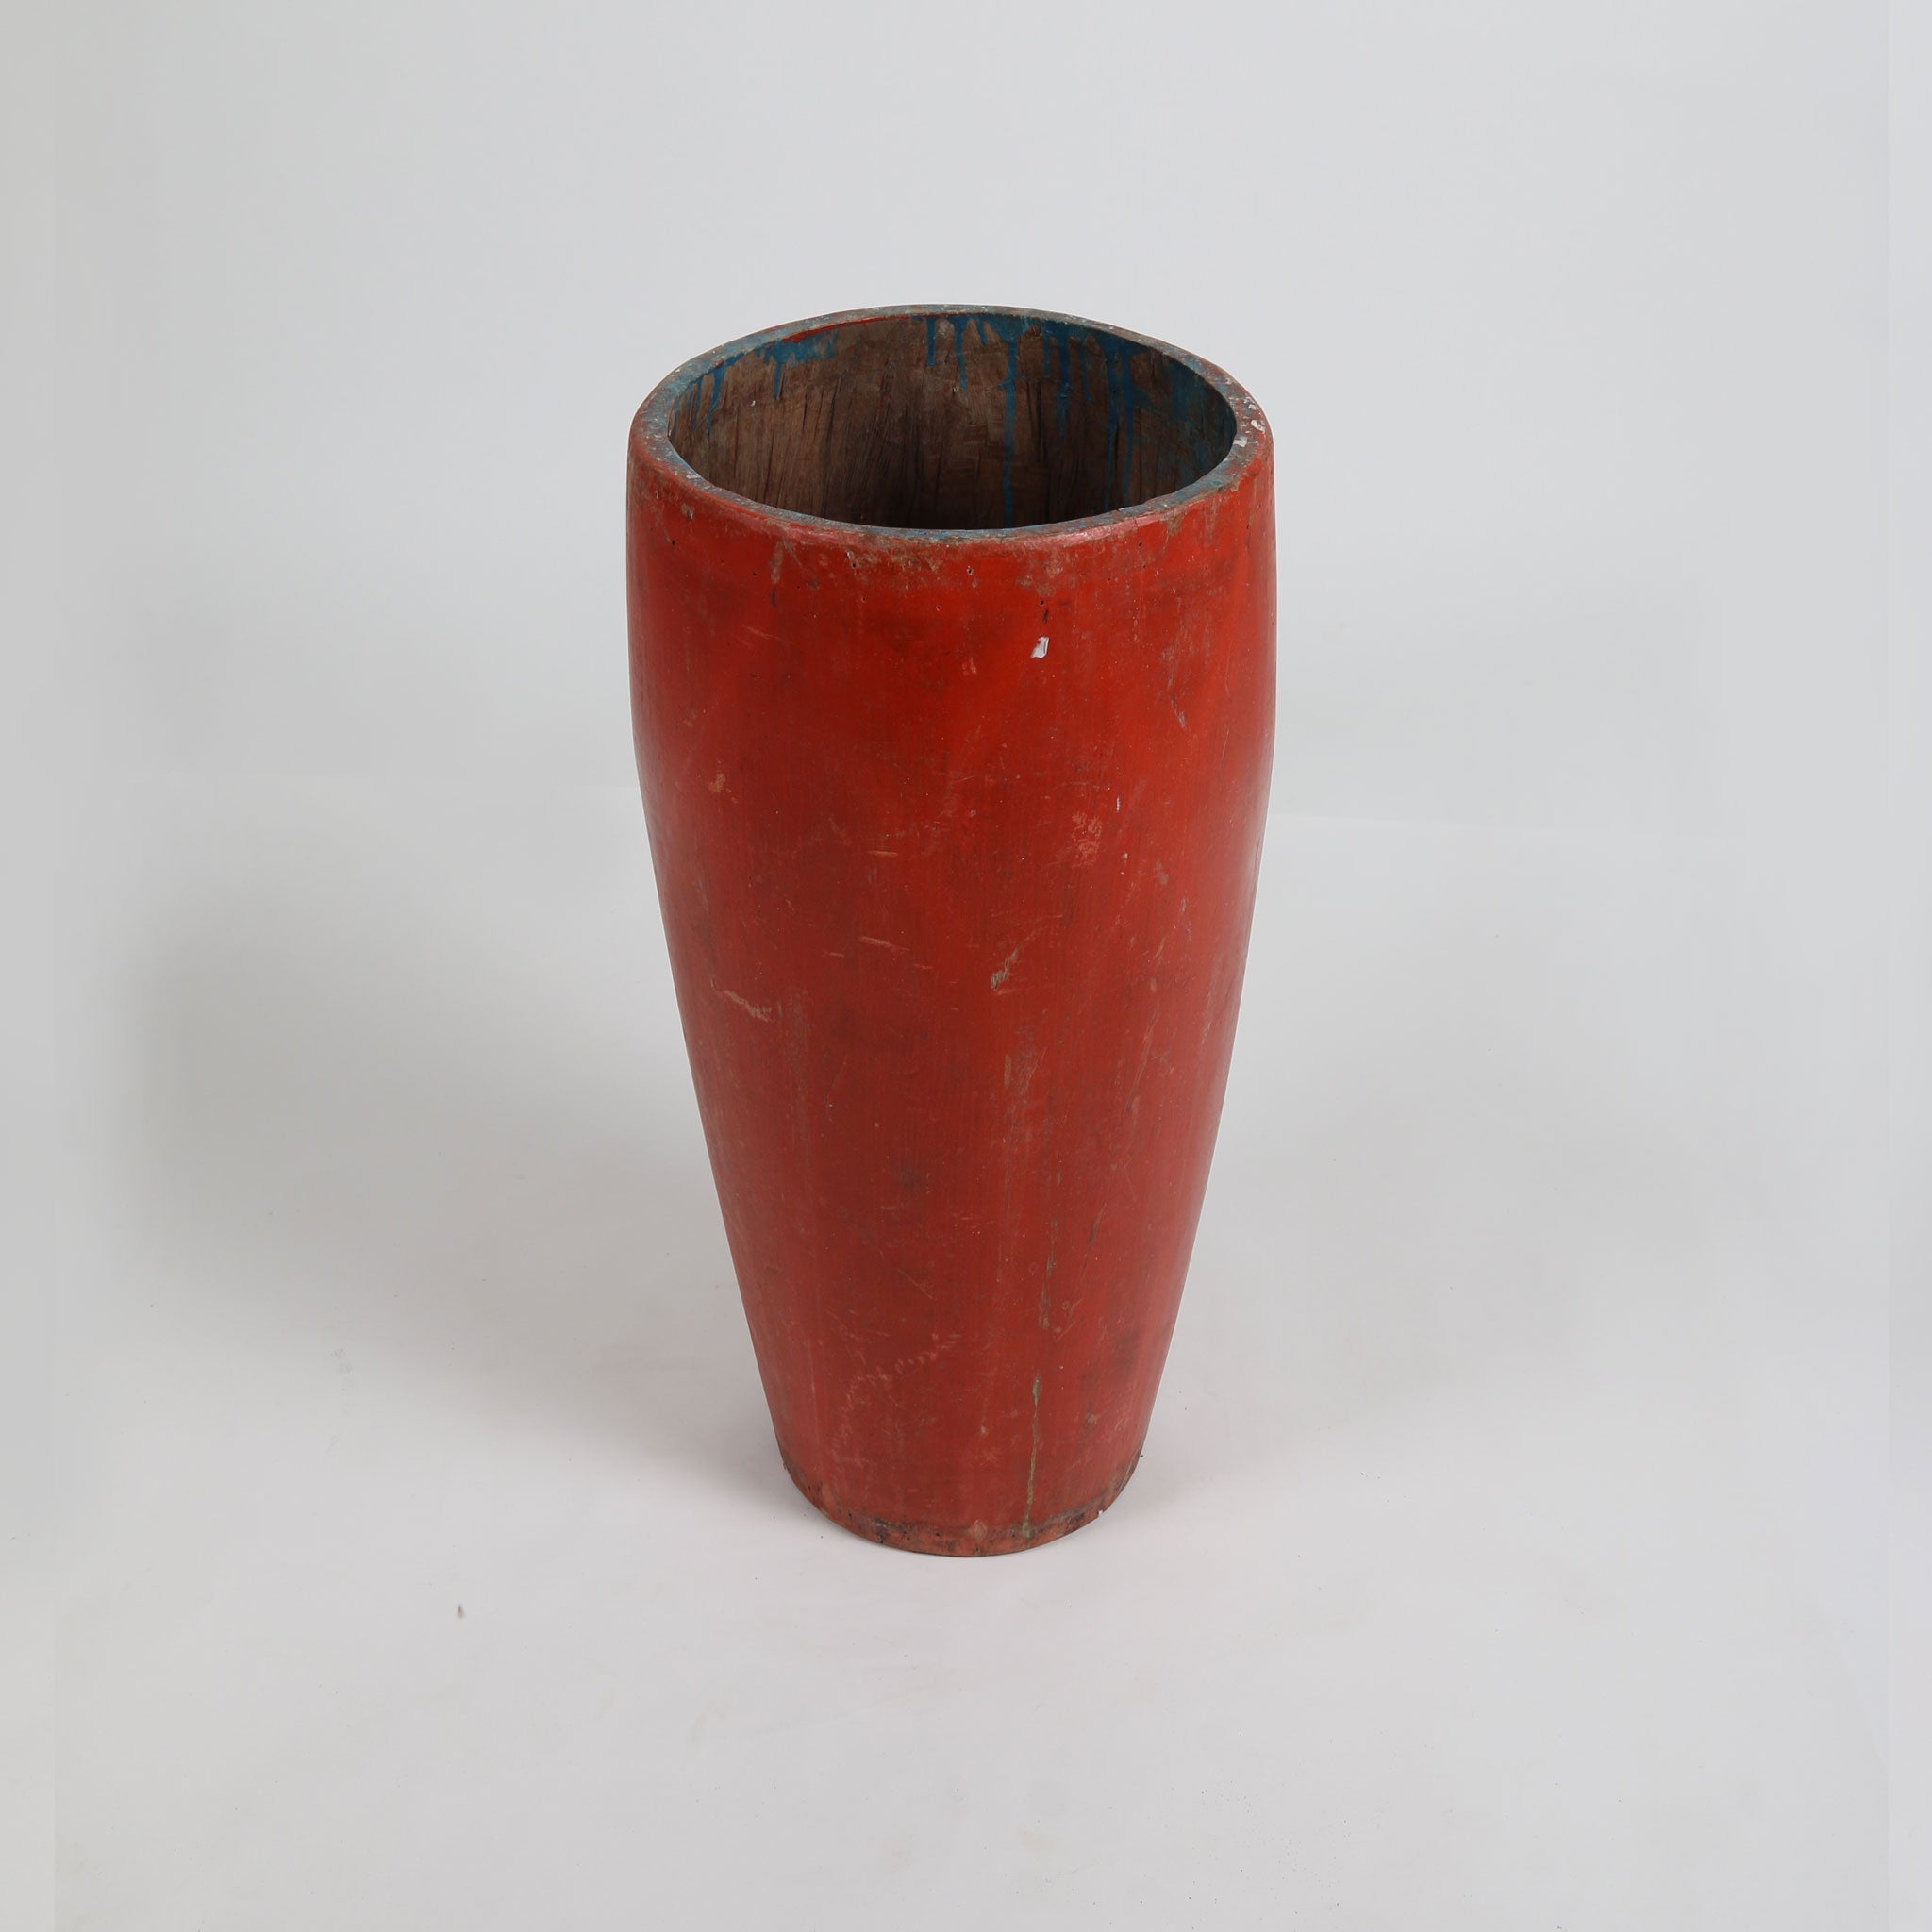 Vintage Wooden Pot (Red)